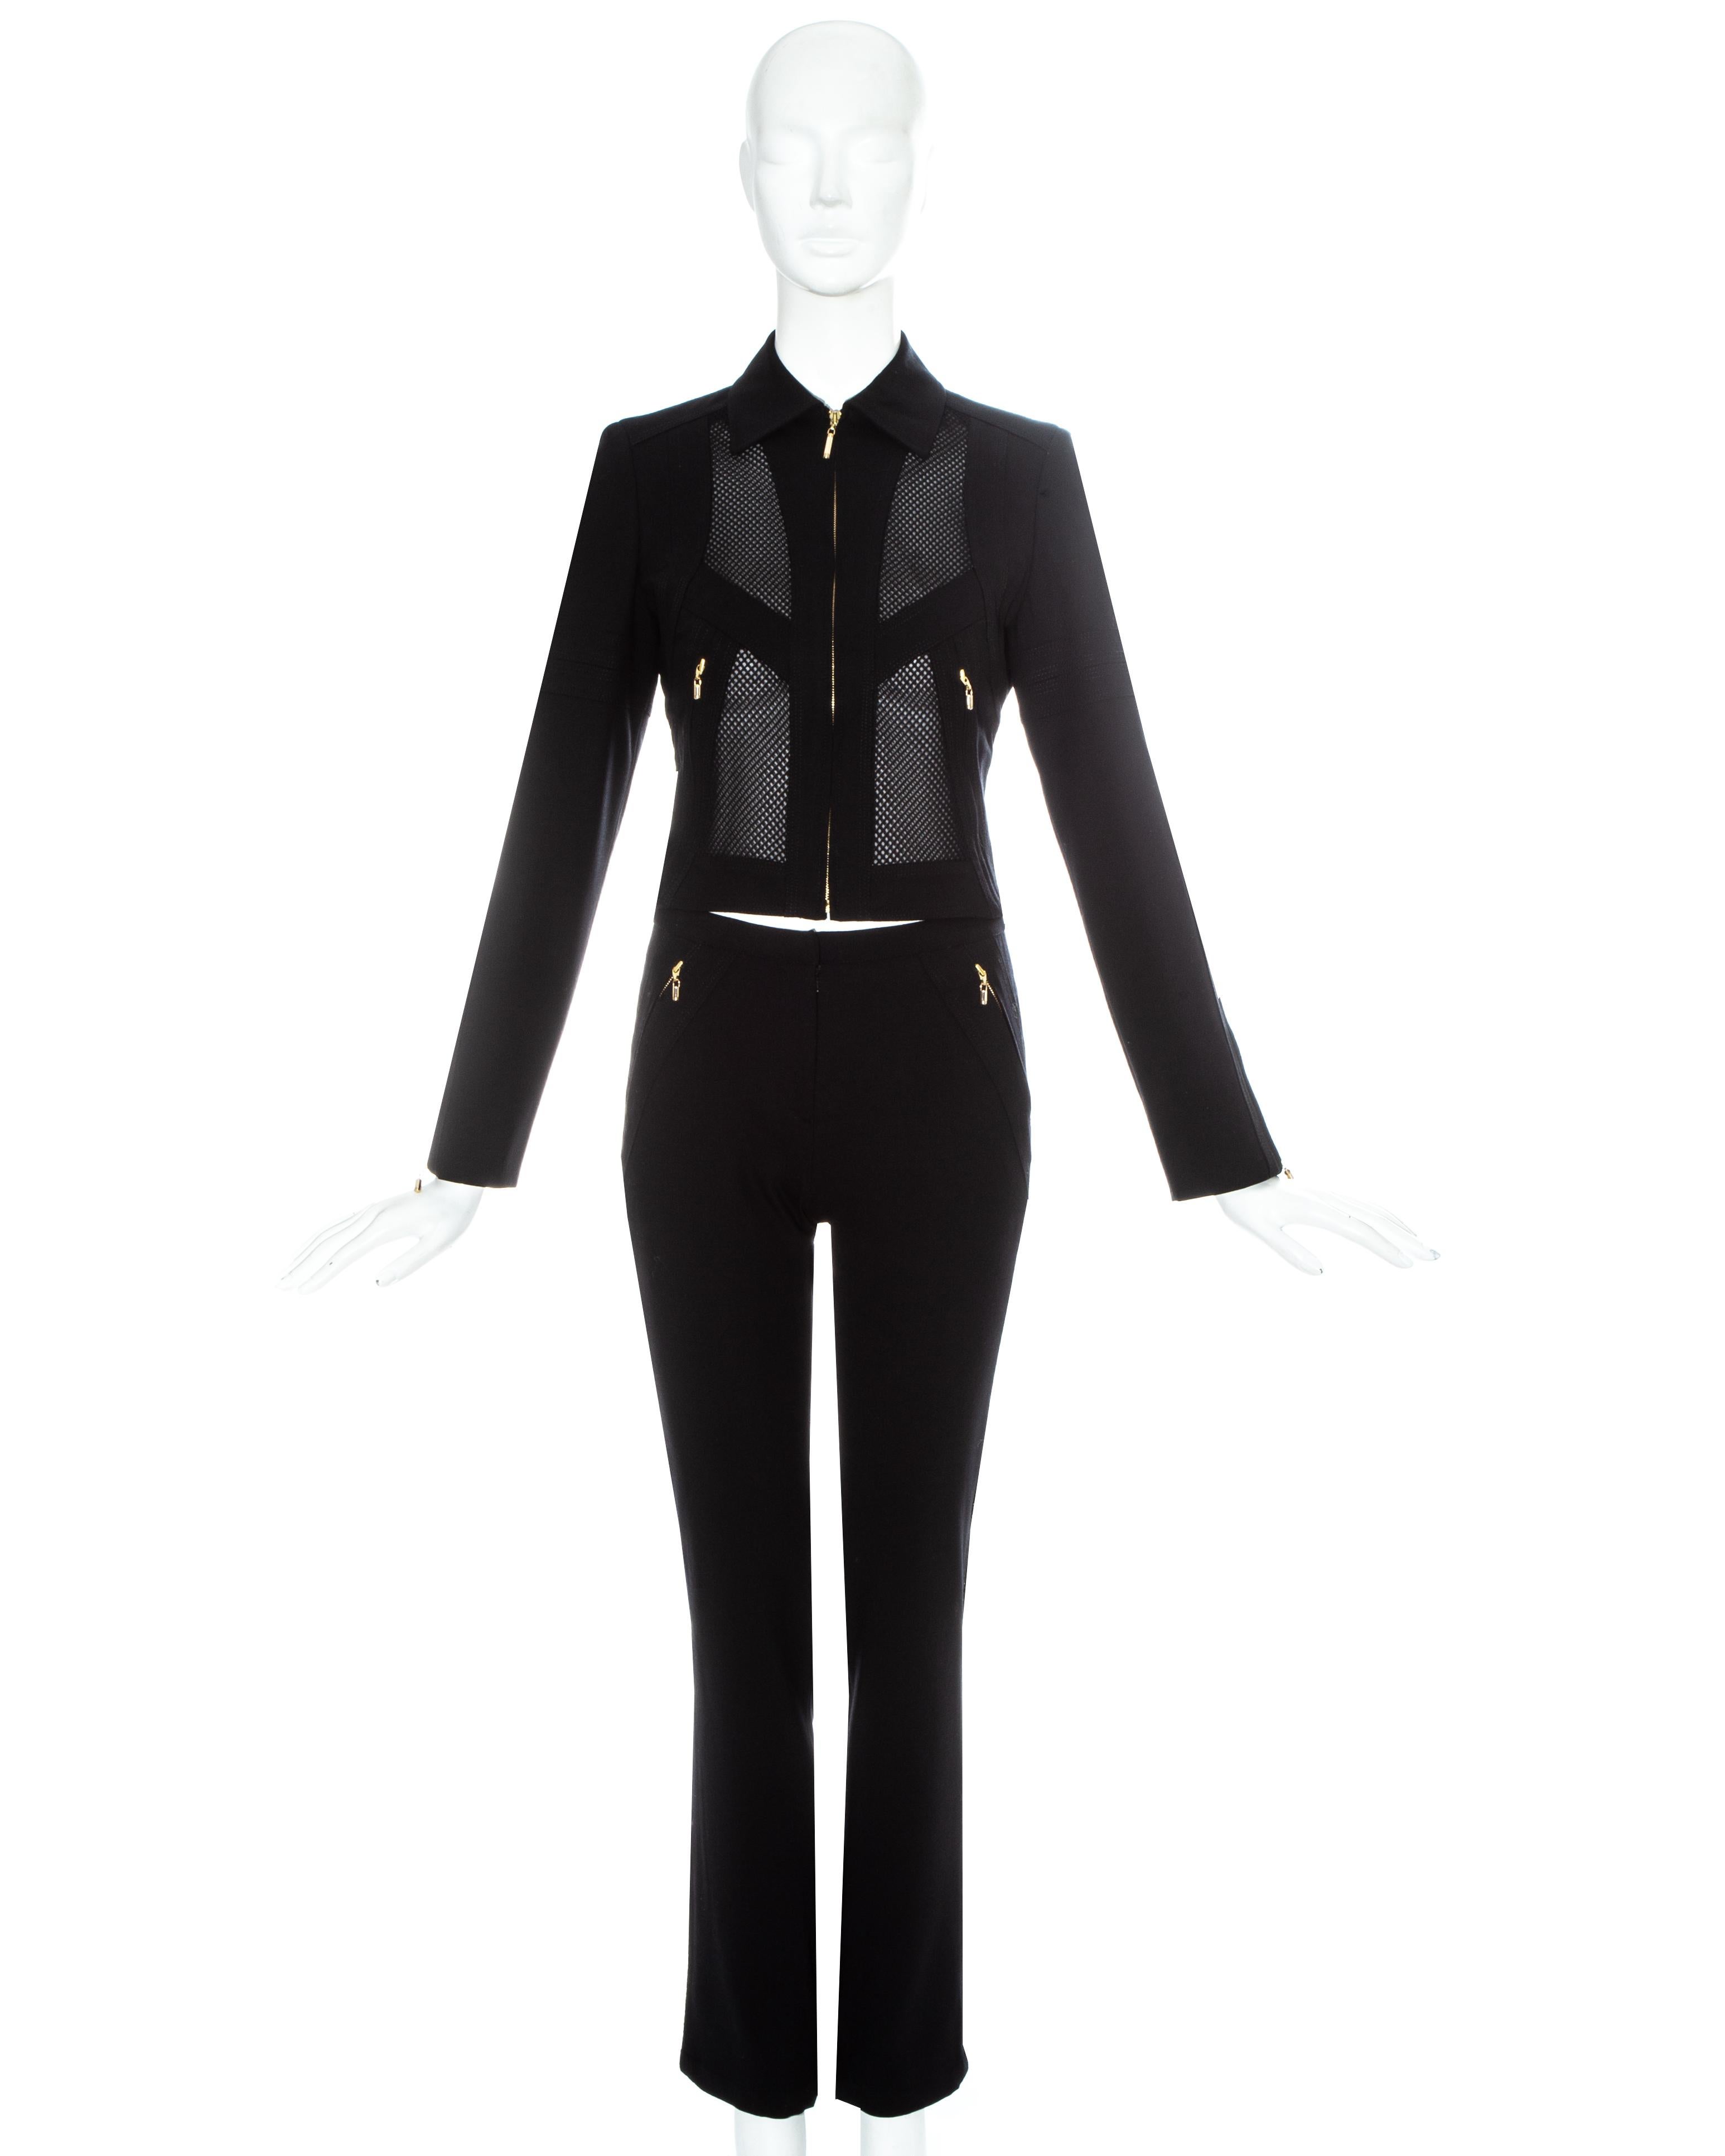 Gianni Versace - Combinaison pantalon en lycra et maille noire avec fermetures à glissière en métal doré

Printemps-été 20033